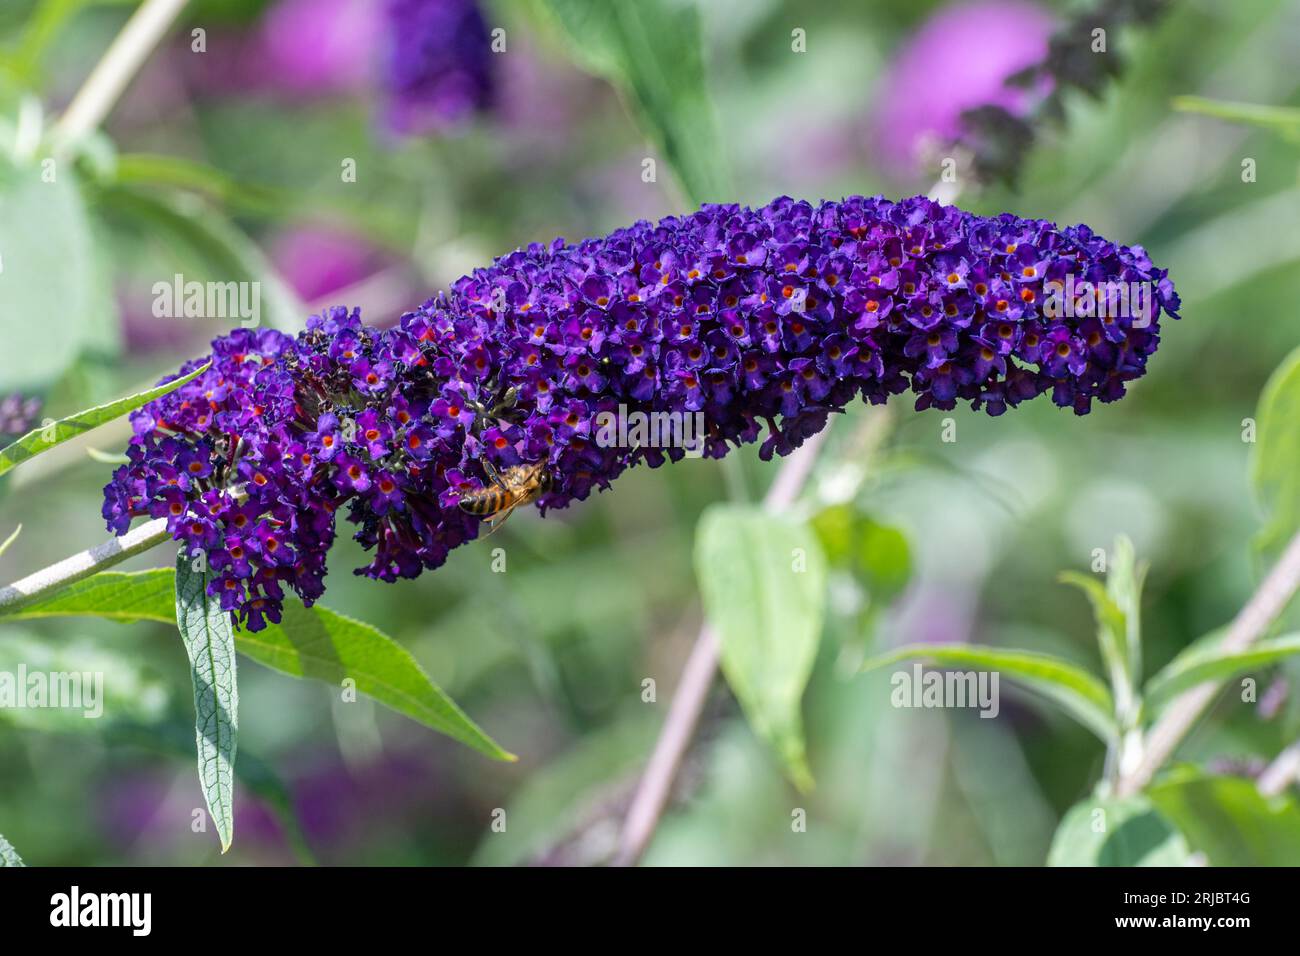 Fiori viola profondi di Buddleja davidii "Cavaliere Nero" (varietà Buddleia), conosciuto come un cespuglio di farfalle, fiorito in estate o agosto, Inghilterra, Regno Unito Foto Stock